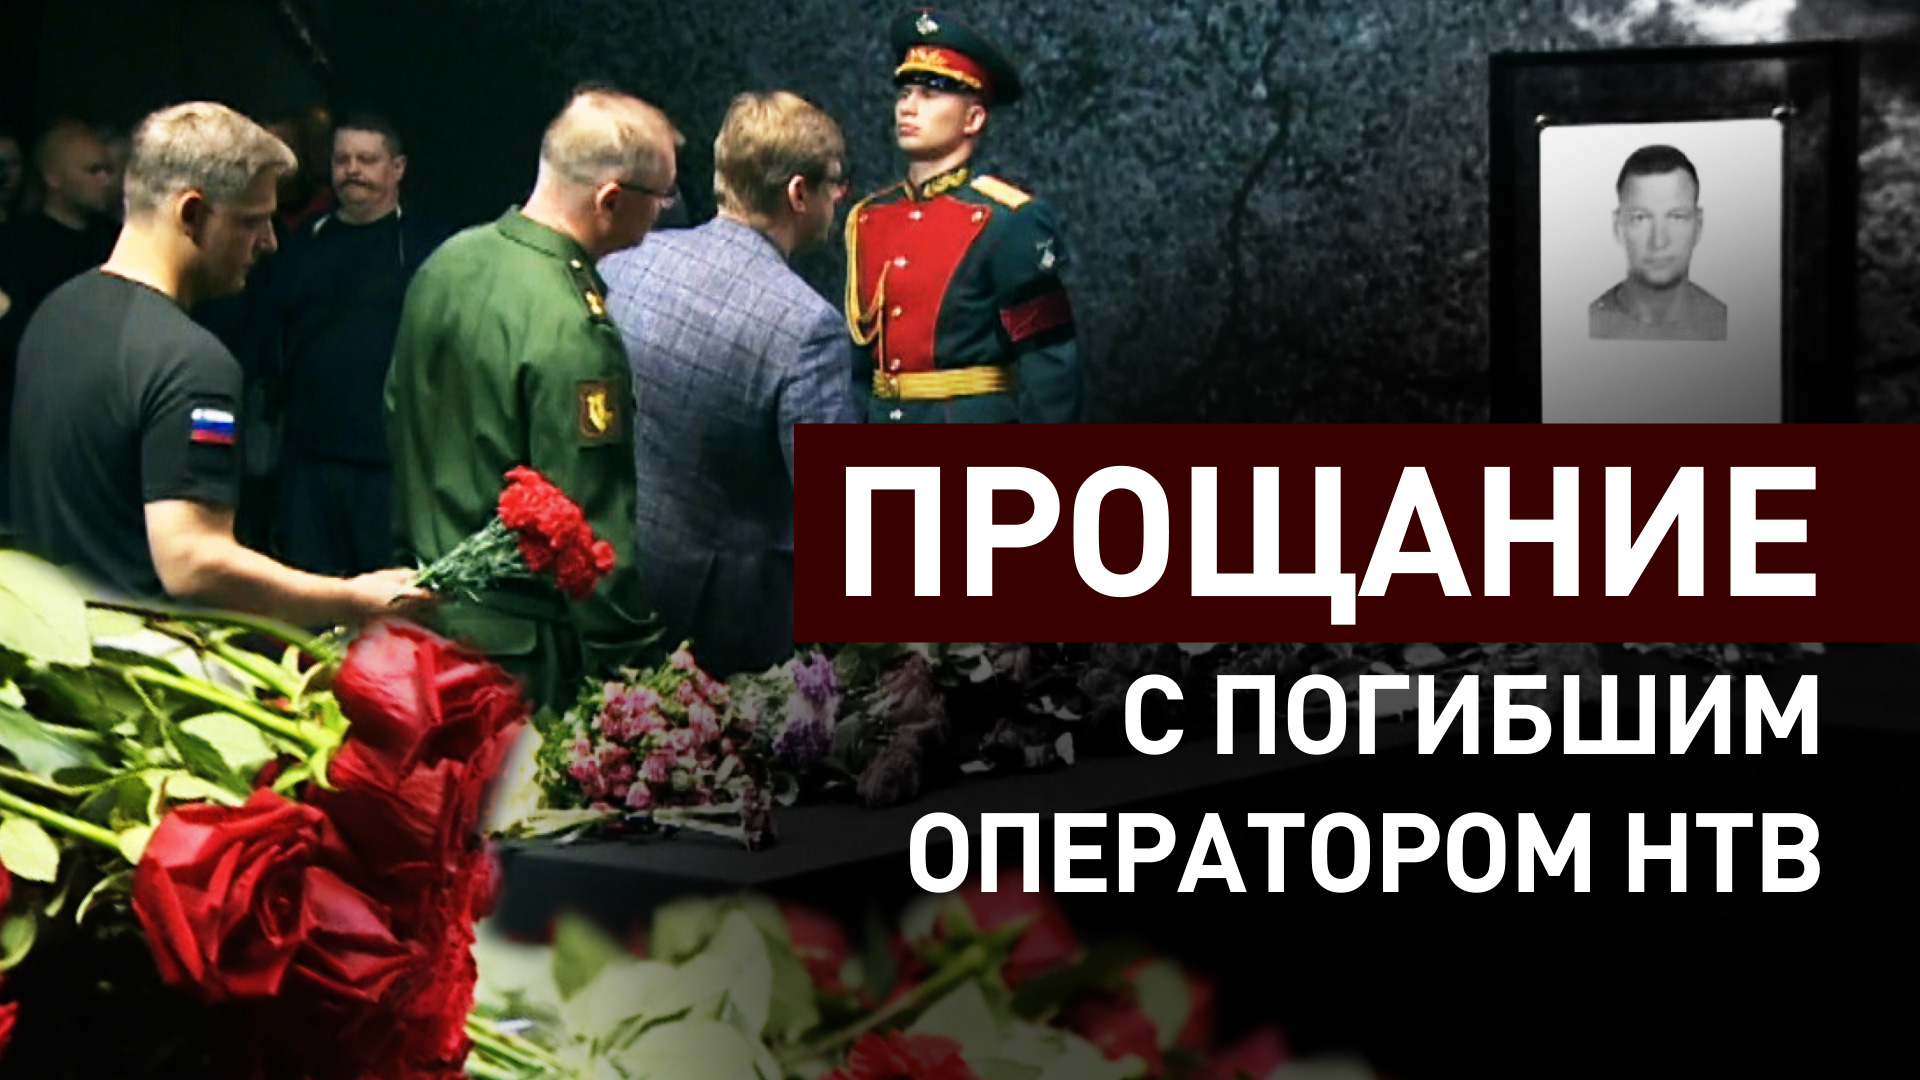 Церемония прощания с погибшим под обстрелом ВСУ оператором НТВ прошла в «Останкино»